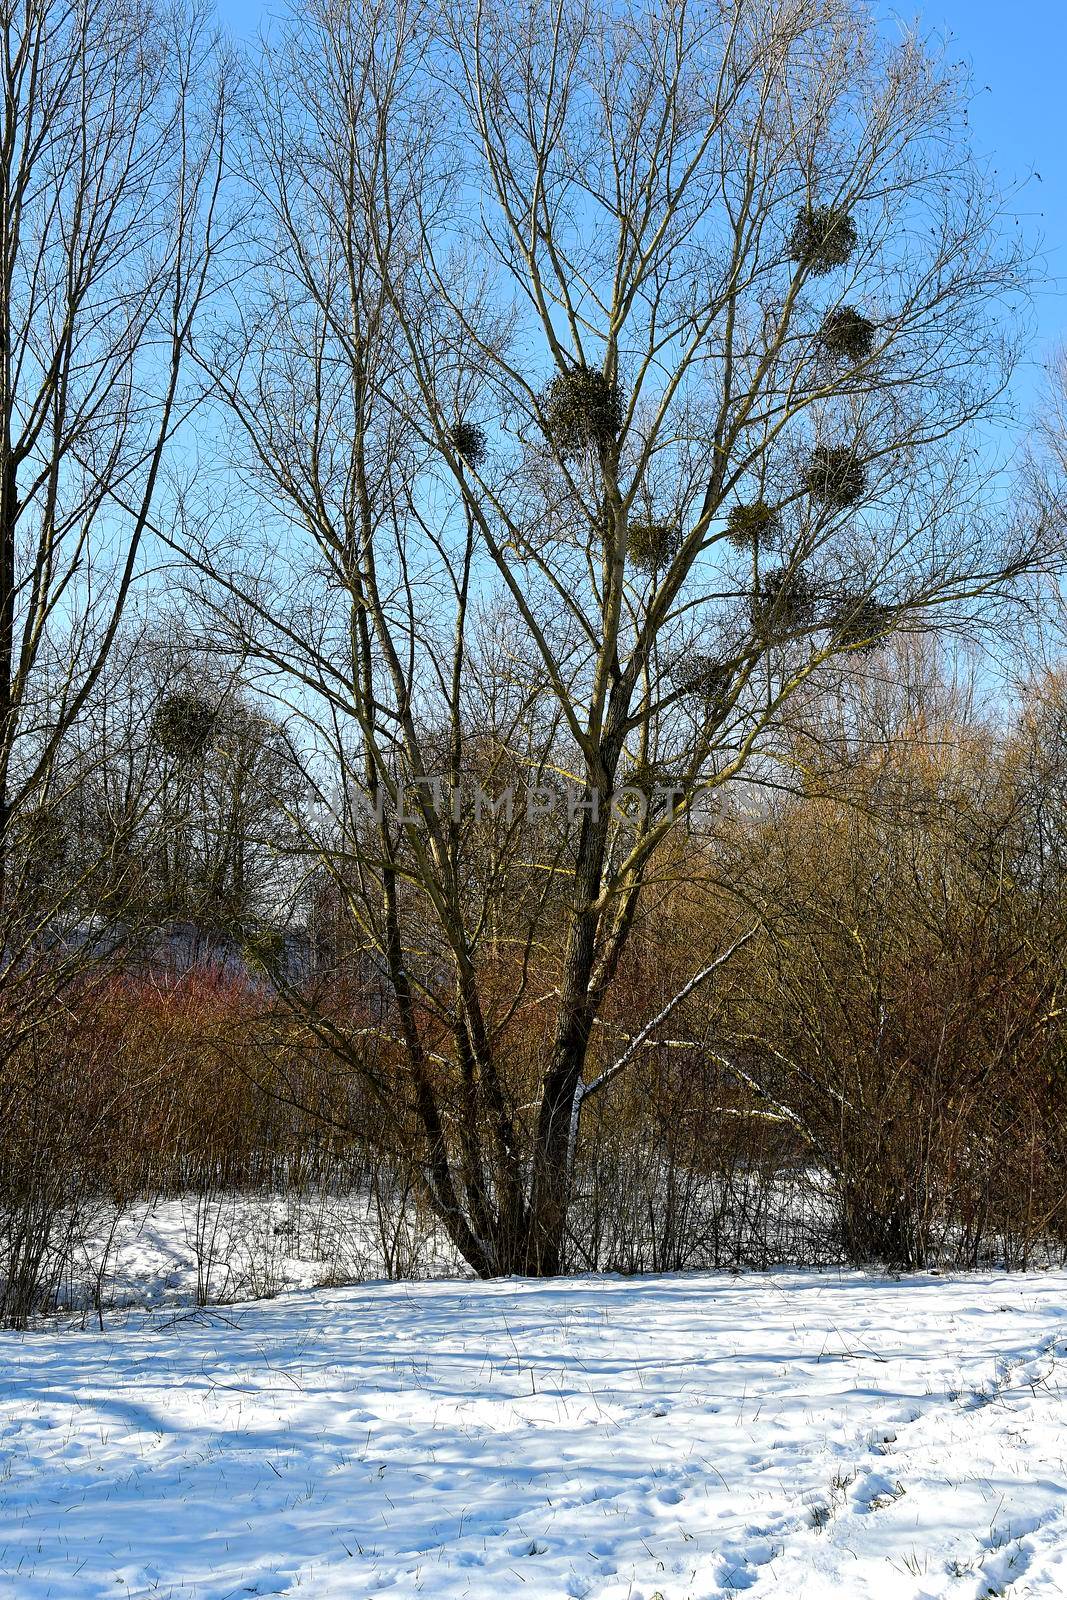 mistletoe with ripe berries in wintertime in Germany by Jochen